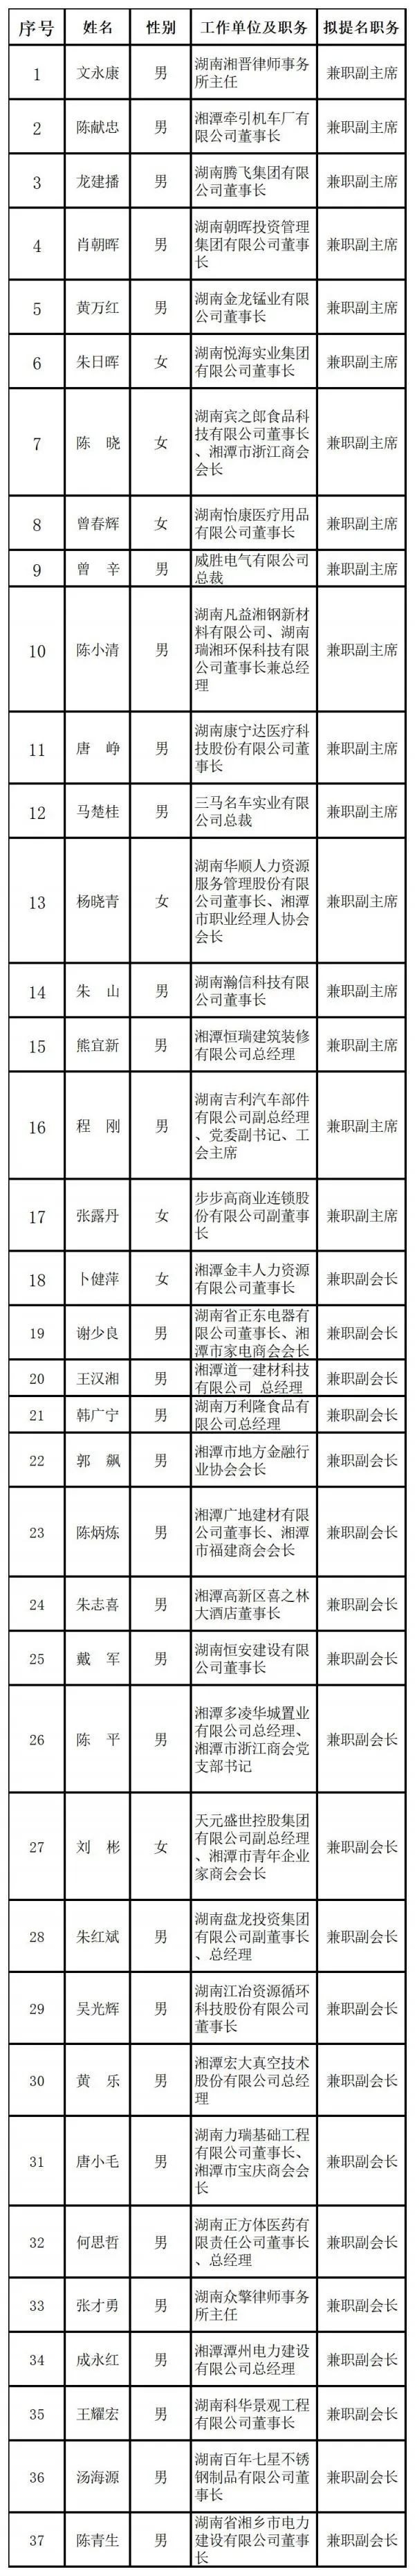 湘潭市工商联第十七届执行委员会兼职副主席（副会长）候选人提名人选公示